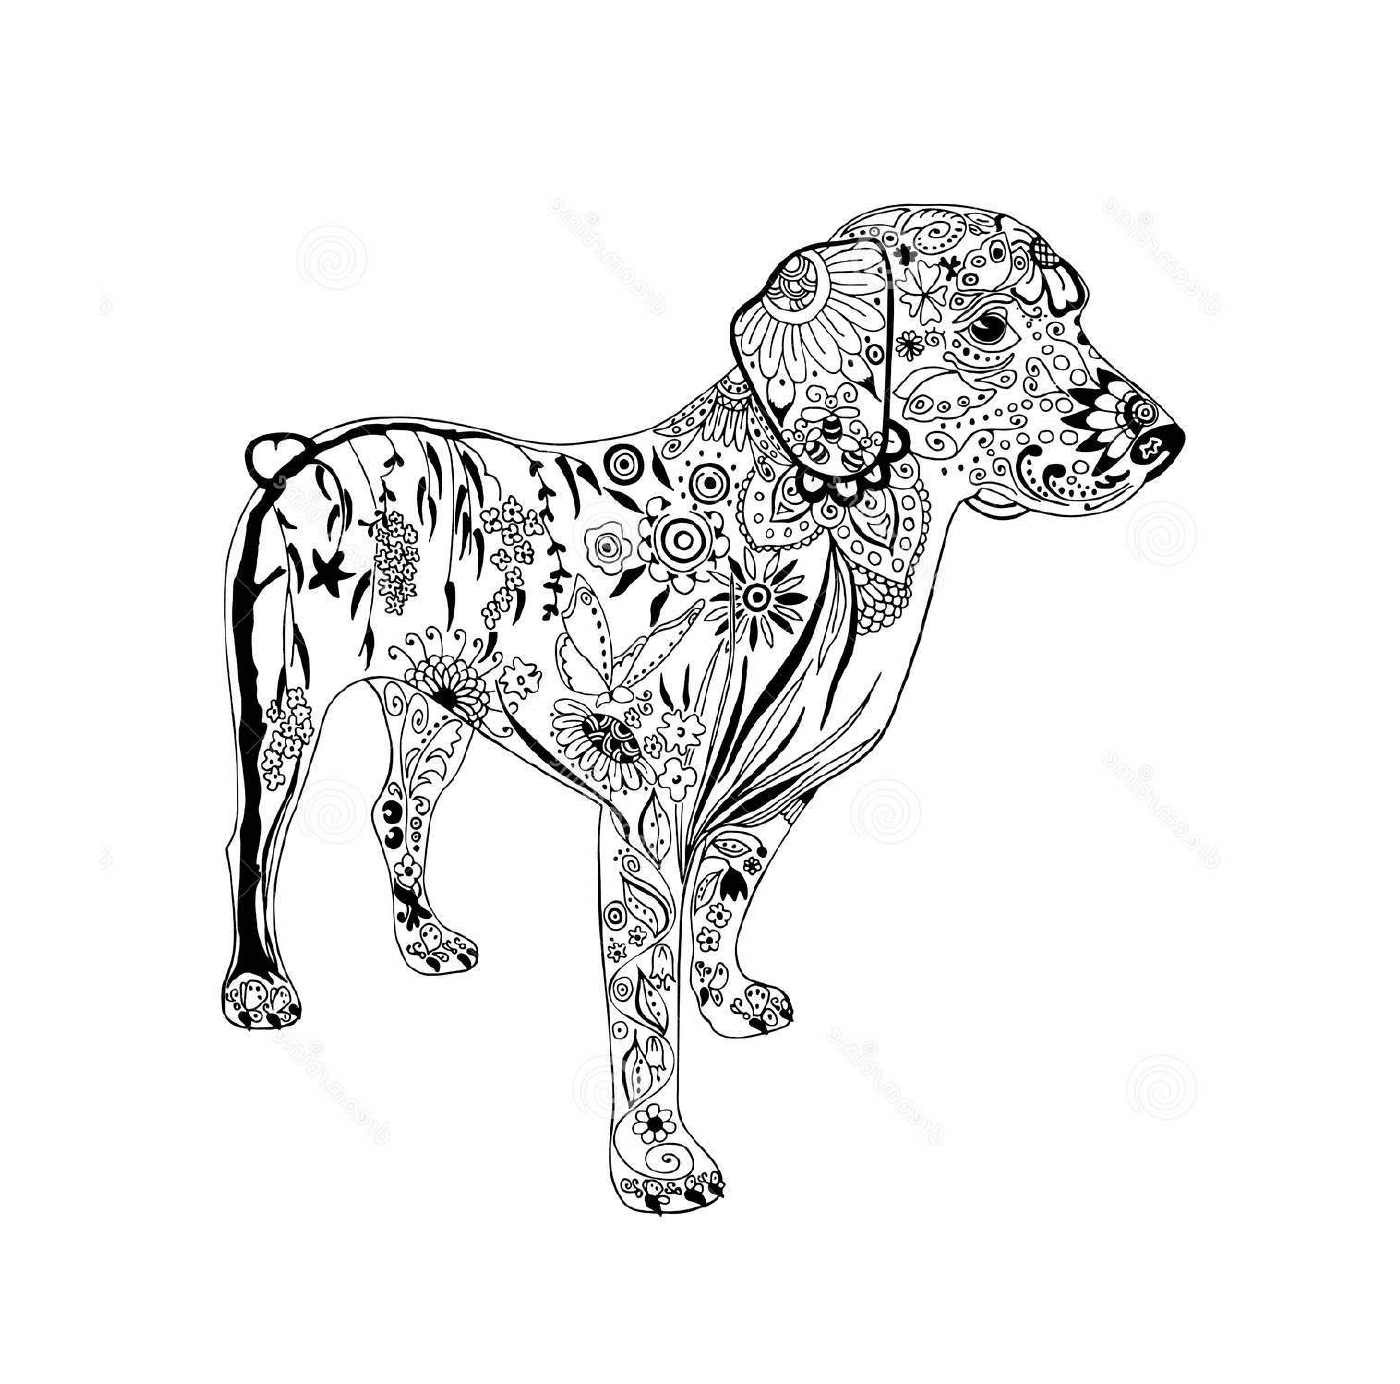  Hund mit Doodle und Zentangle Motiven 